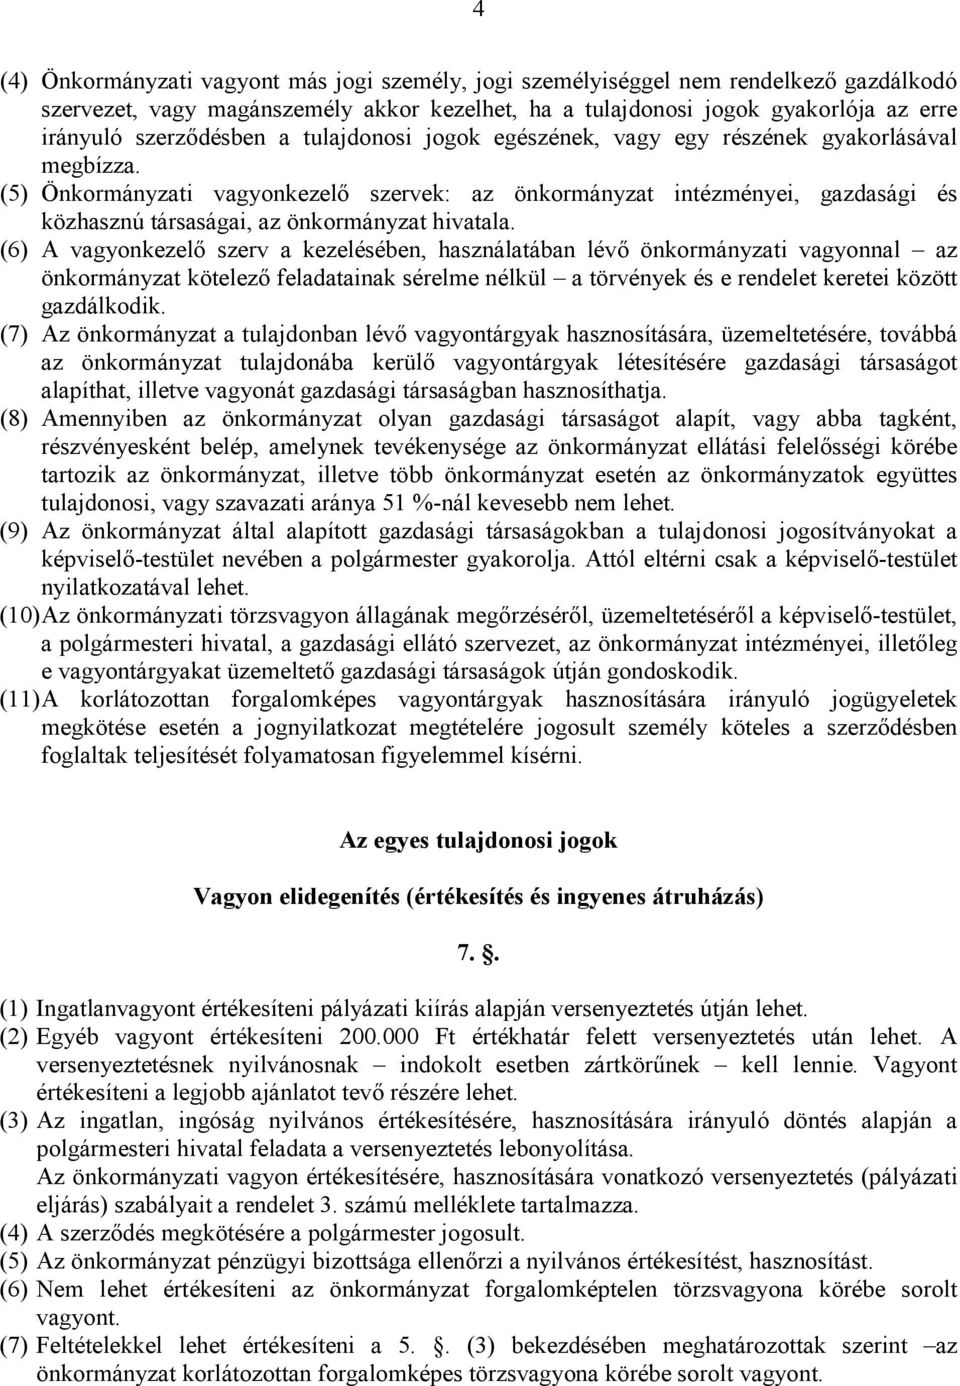 (5) Önkormányzati vagyonkezelı szervek: az önkormányzat intézményei, gazdasági és közhasznú társaságai, az önkormányzat hivatala.